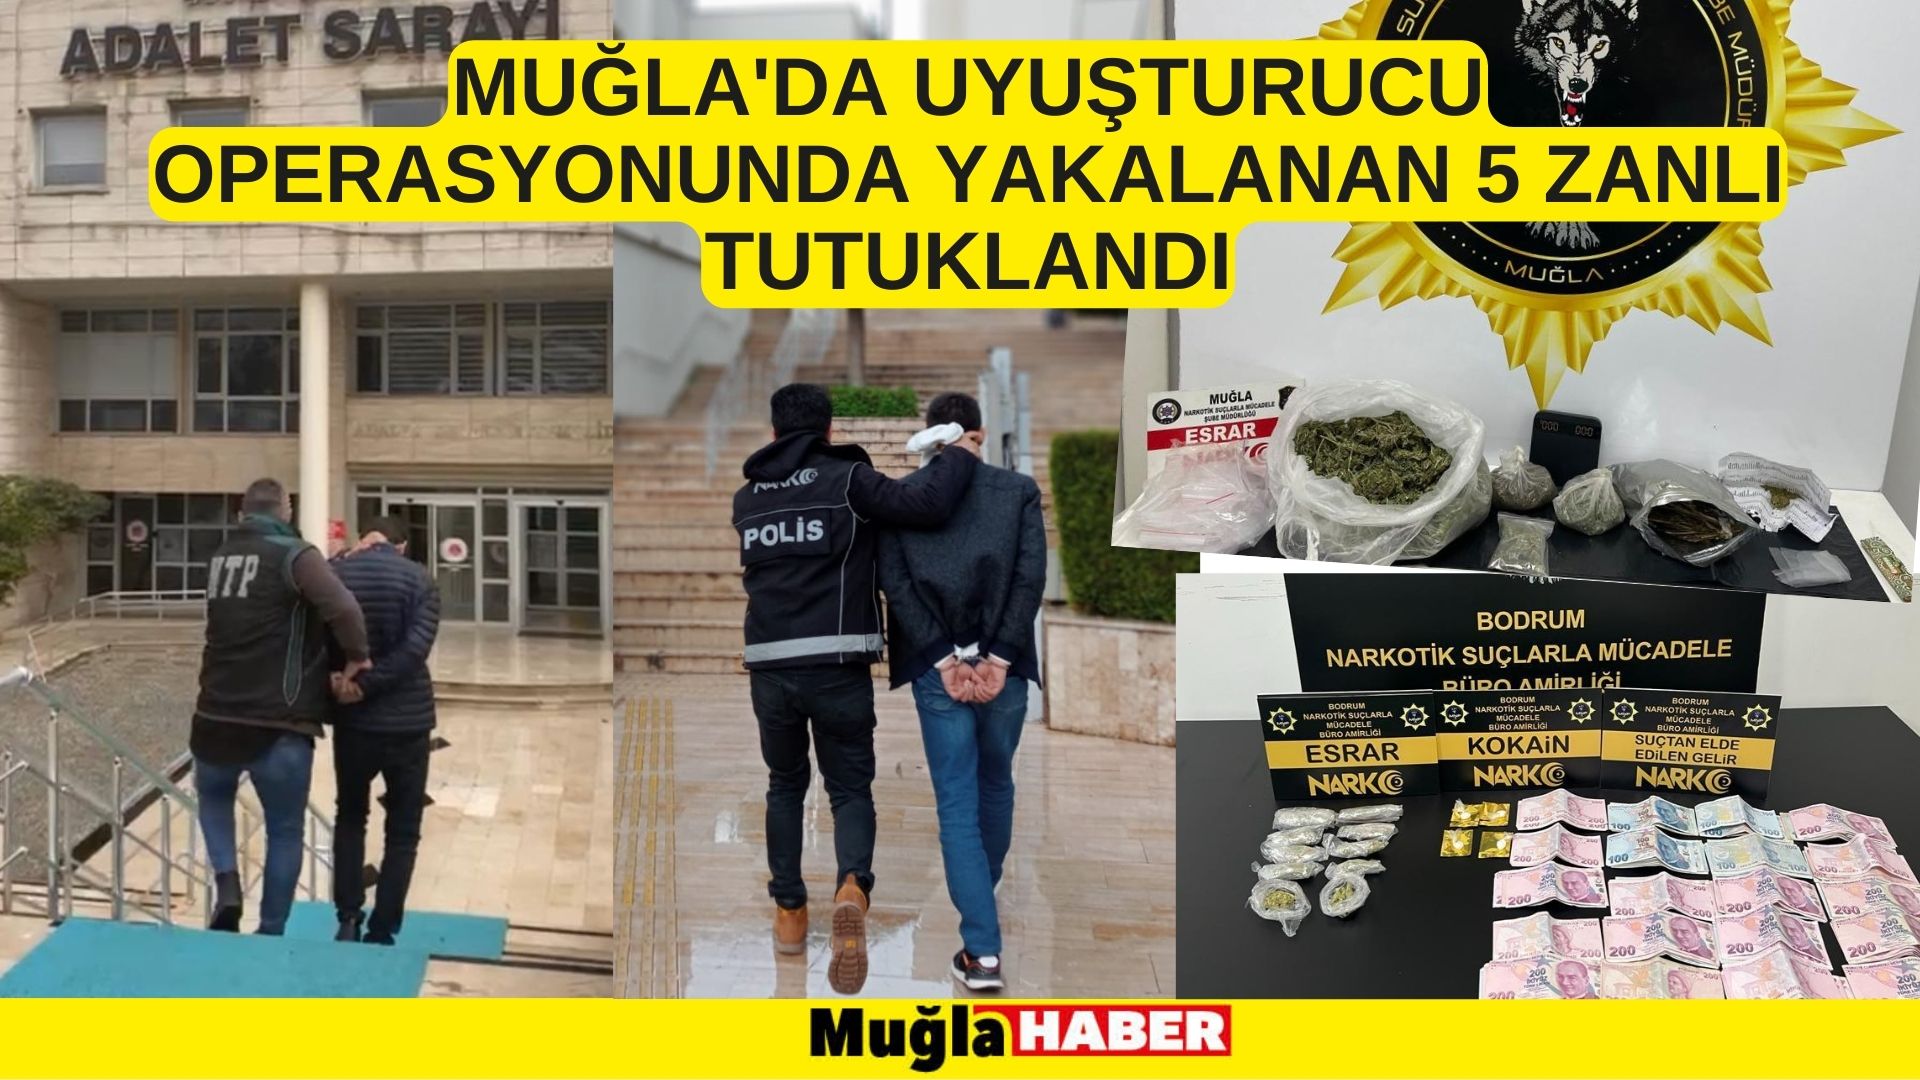 Muğla'da uyuşturucu operasyonunda yakalanan 5 zanlı tutuklandı